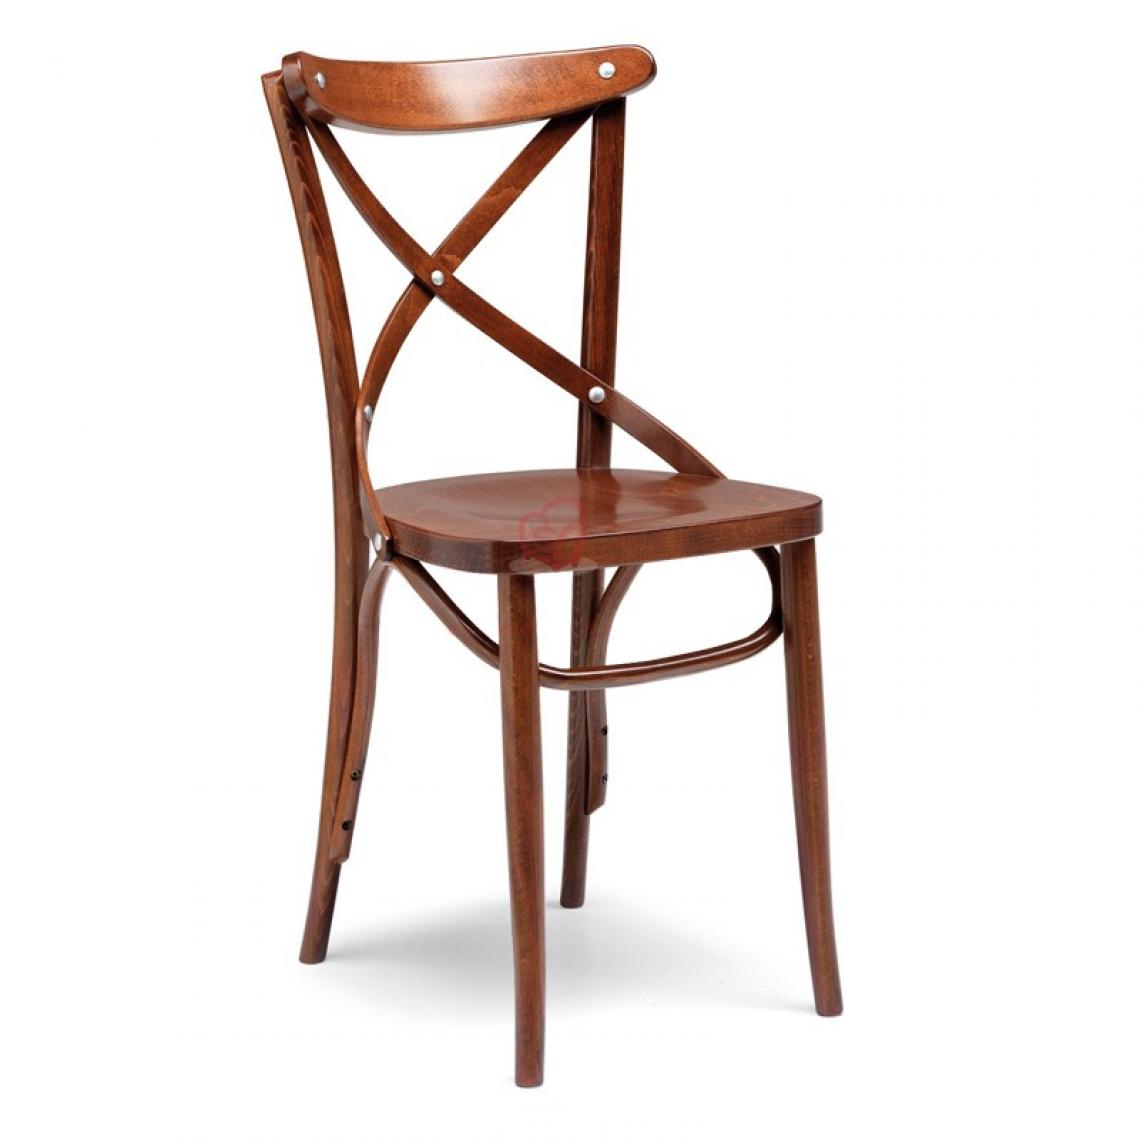 Webmarketpoint - Chaise en bois de hêtre brut courbé couleur cognac vieilli 51x51xh.89 cm - Chaises